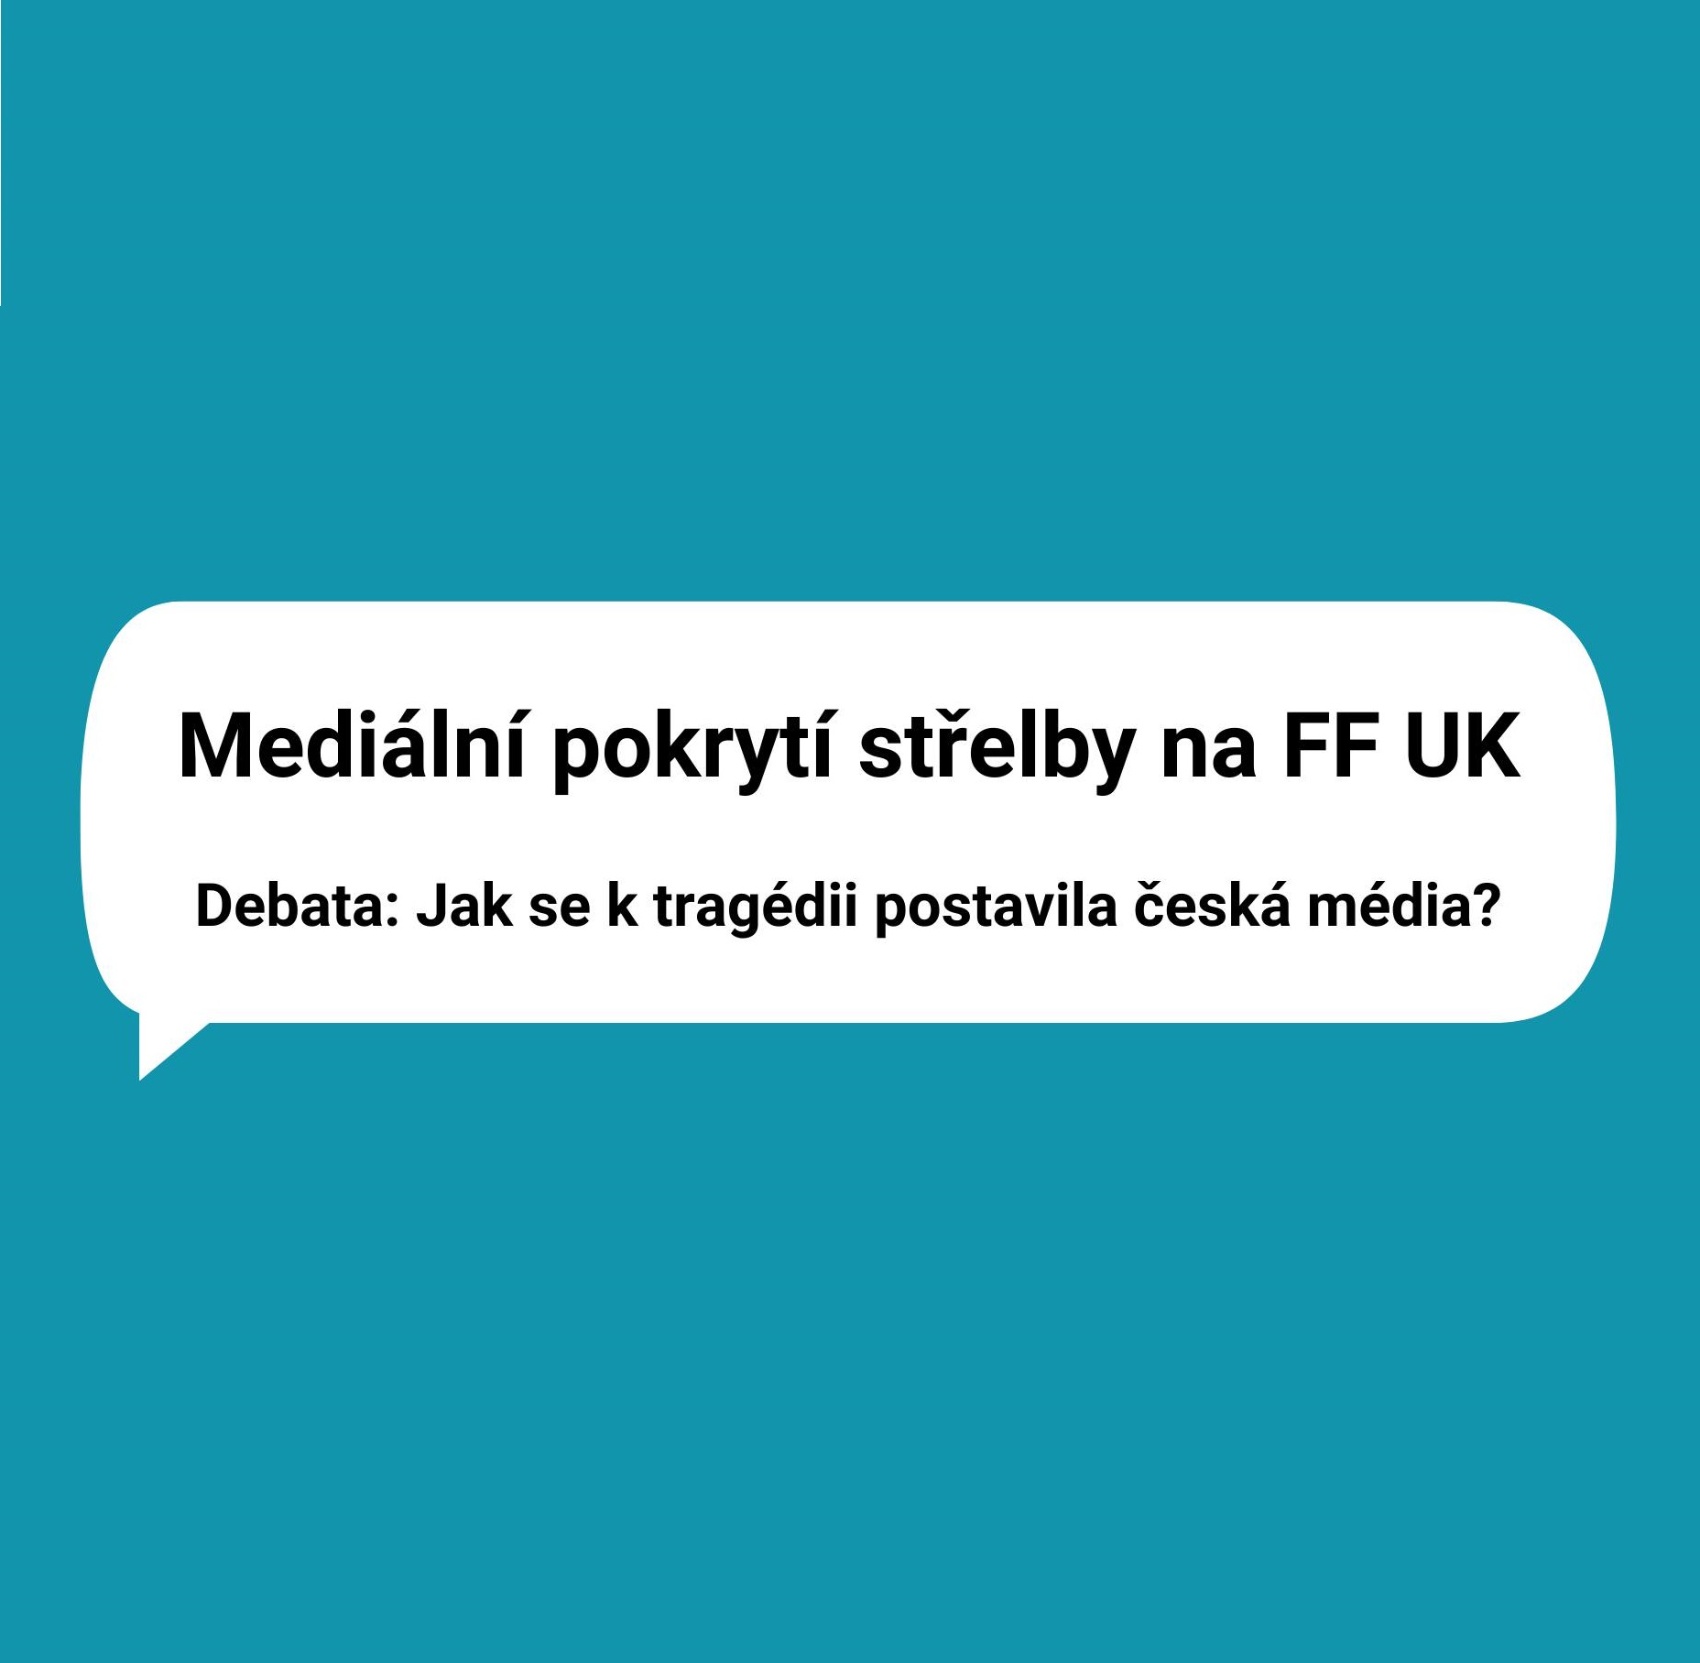 Debata: Jak se k tragédii na FF UK postavila česká média?